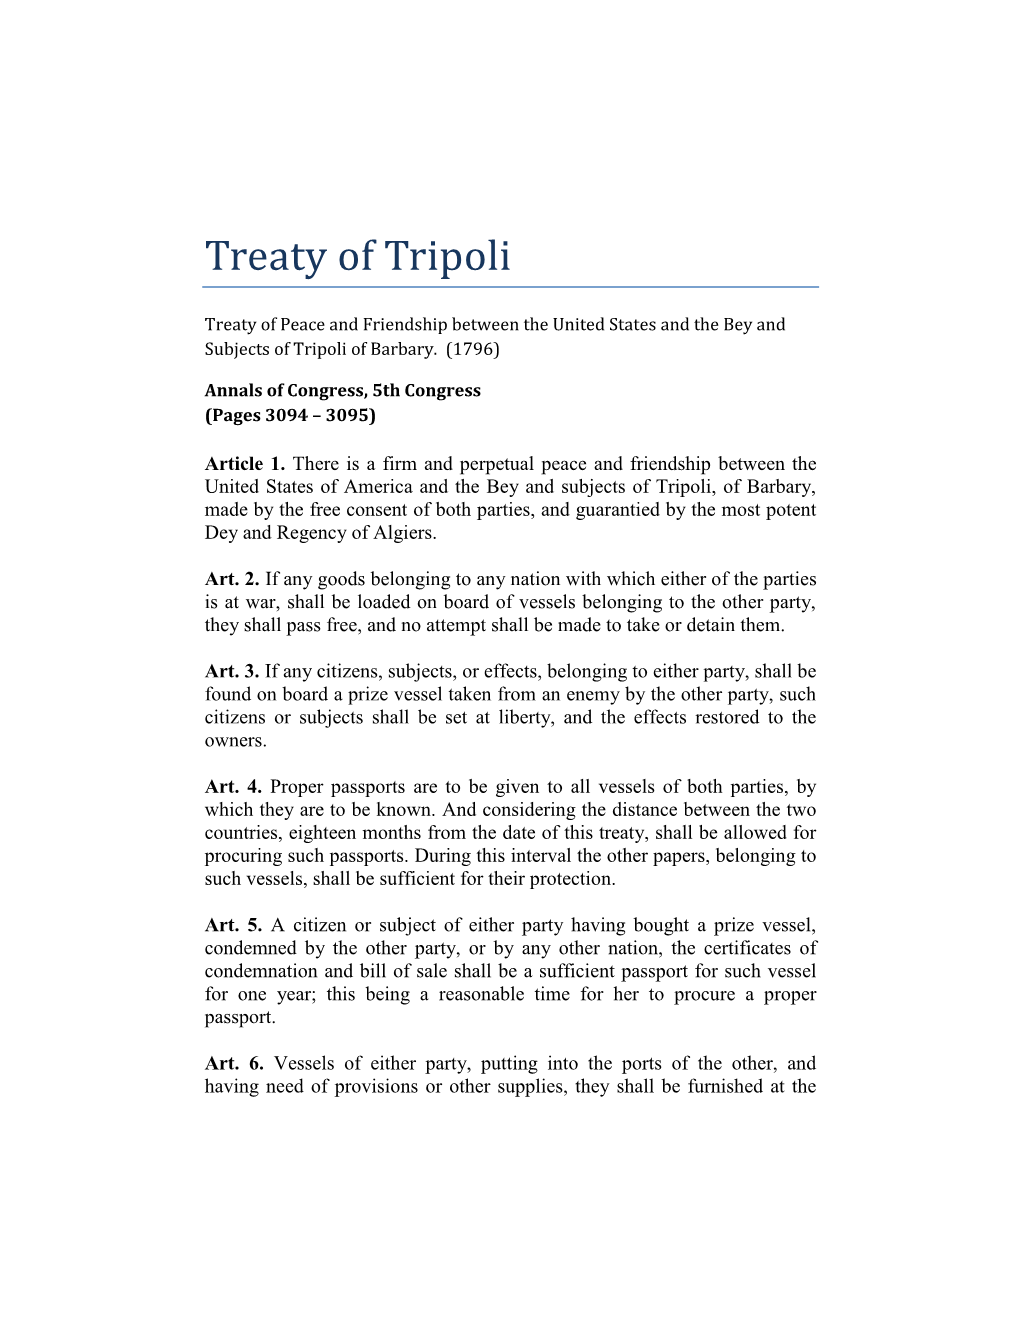 The Treaty of Tripoli